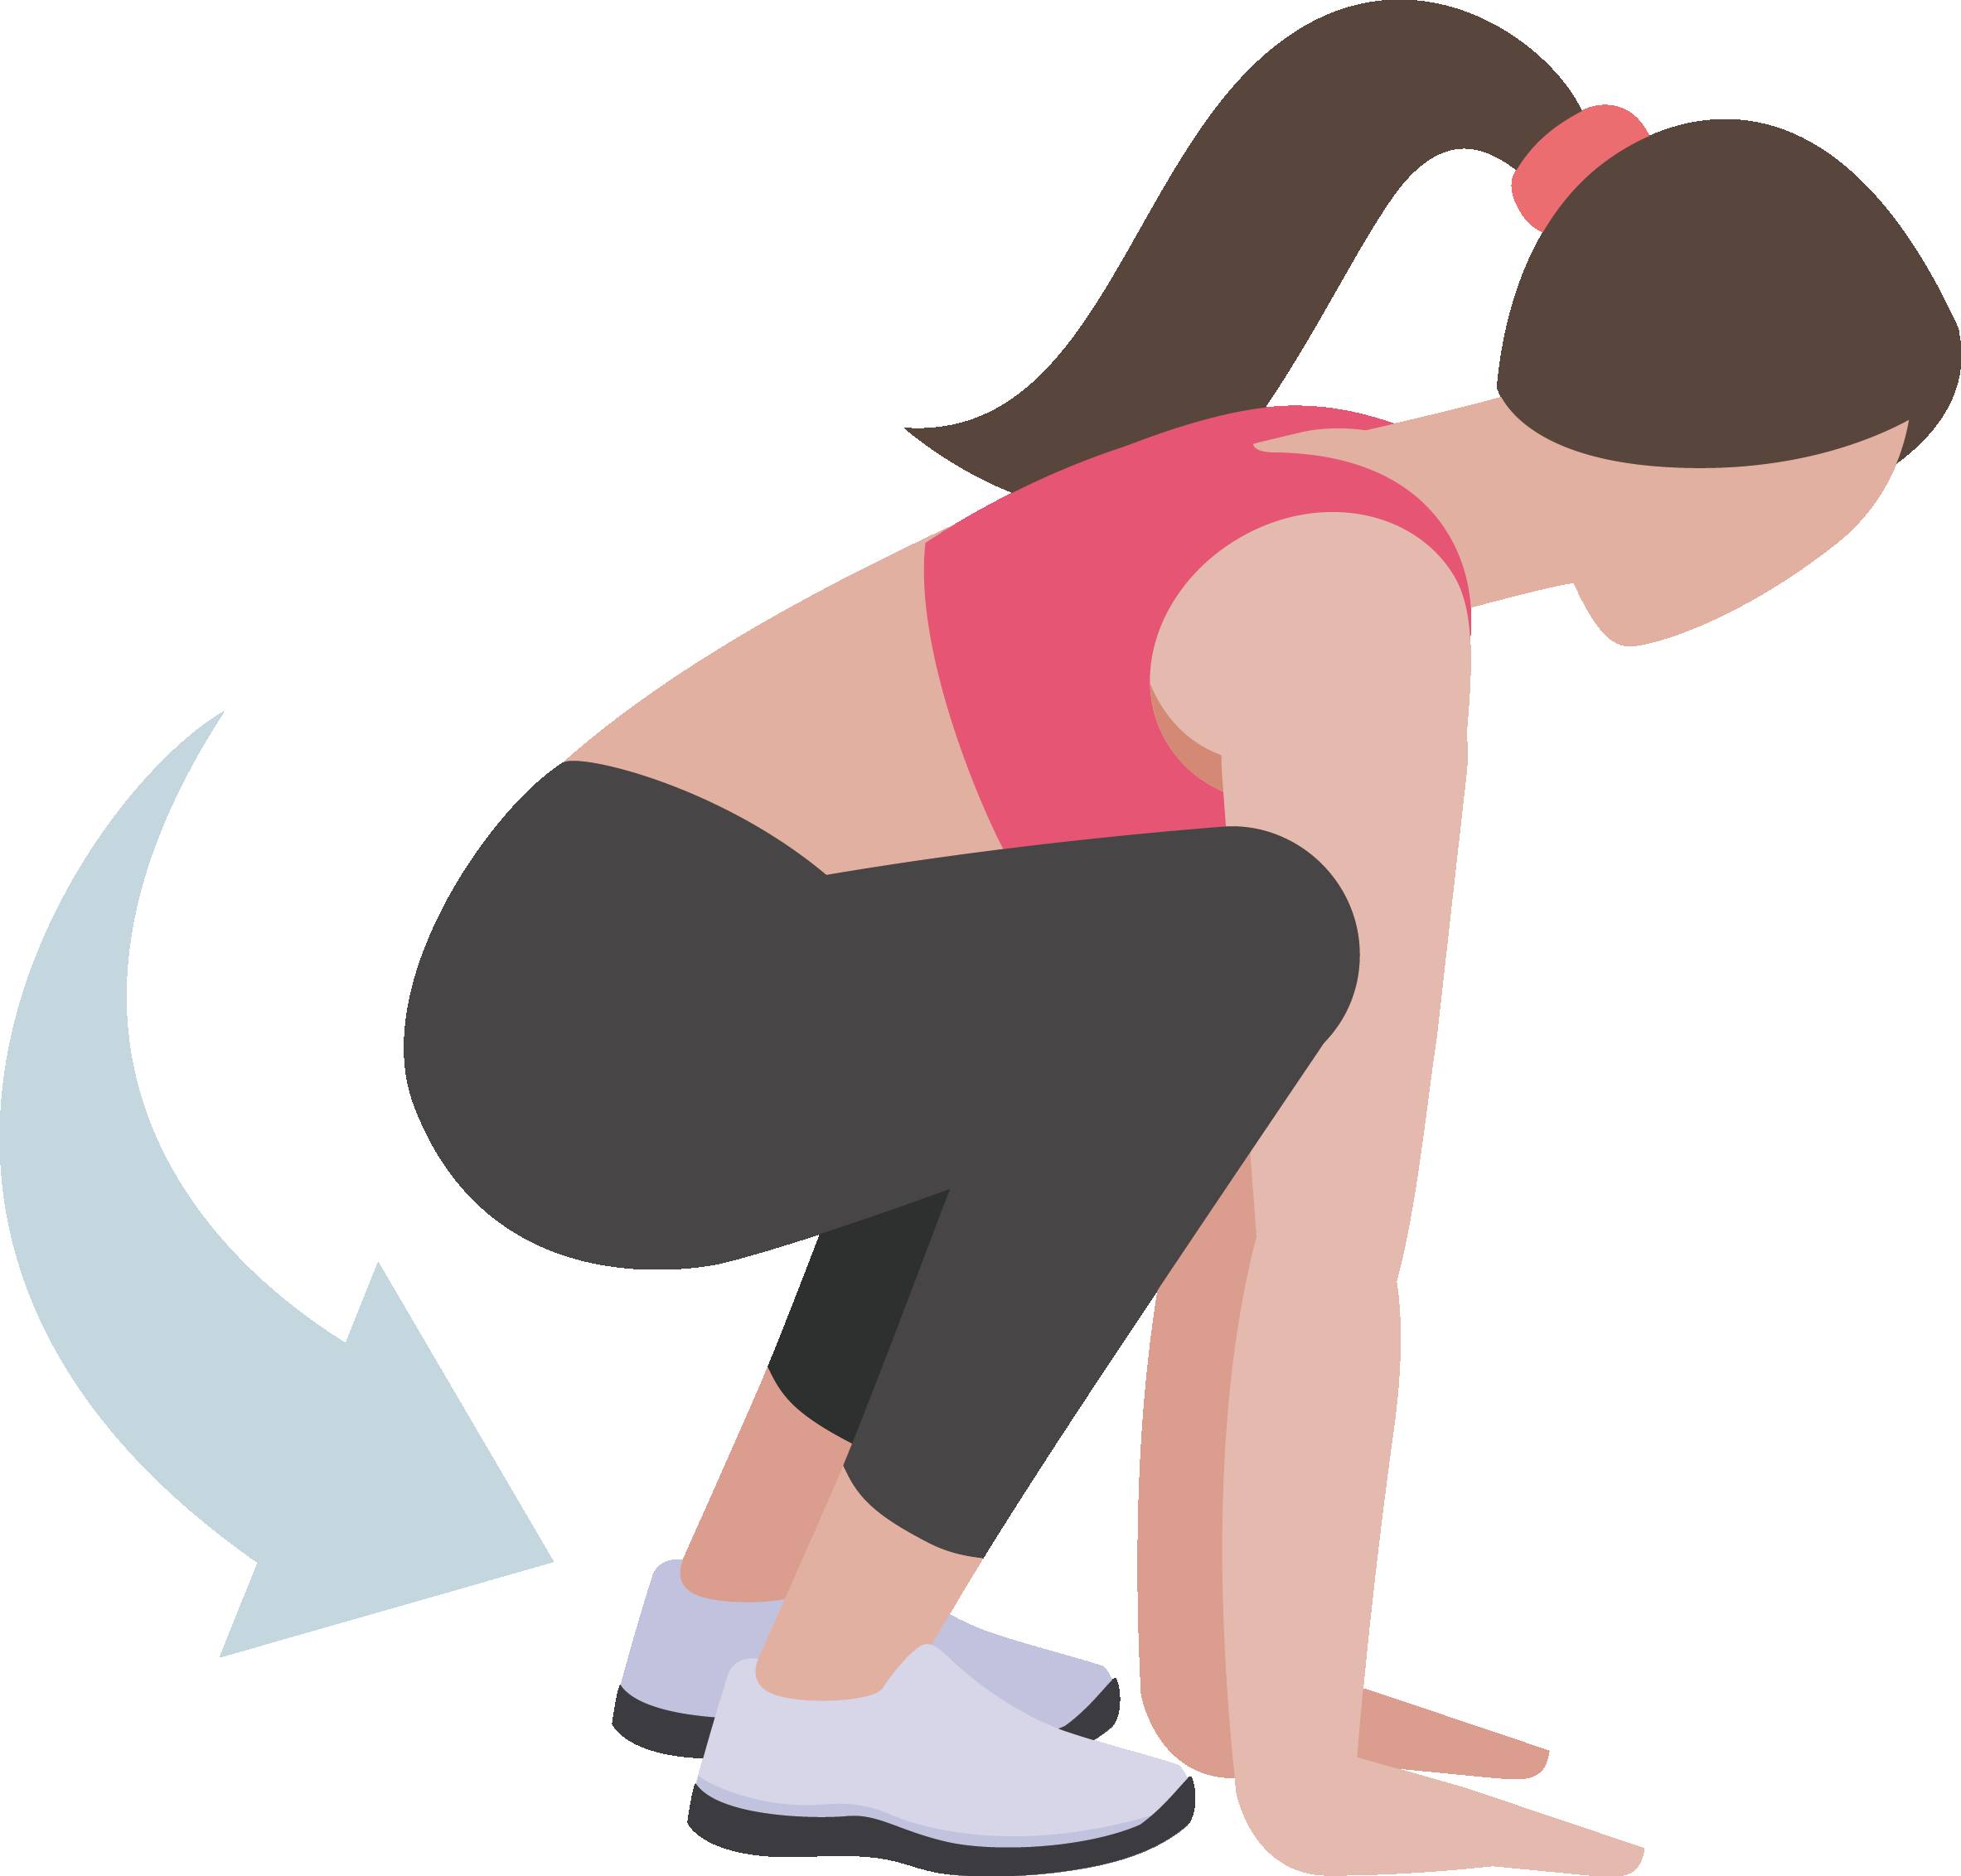 下蹲运动,主要靠两条腿的屈伸,来支撑躯干以上身体的重量.